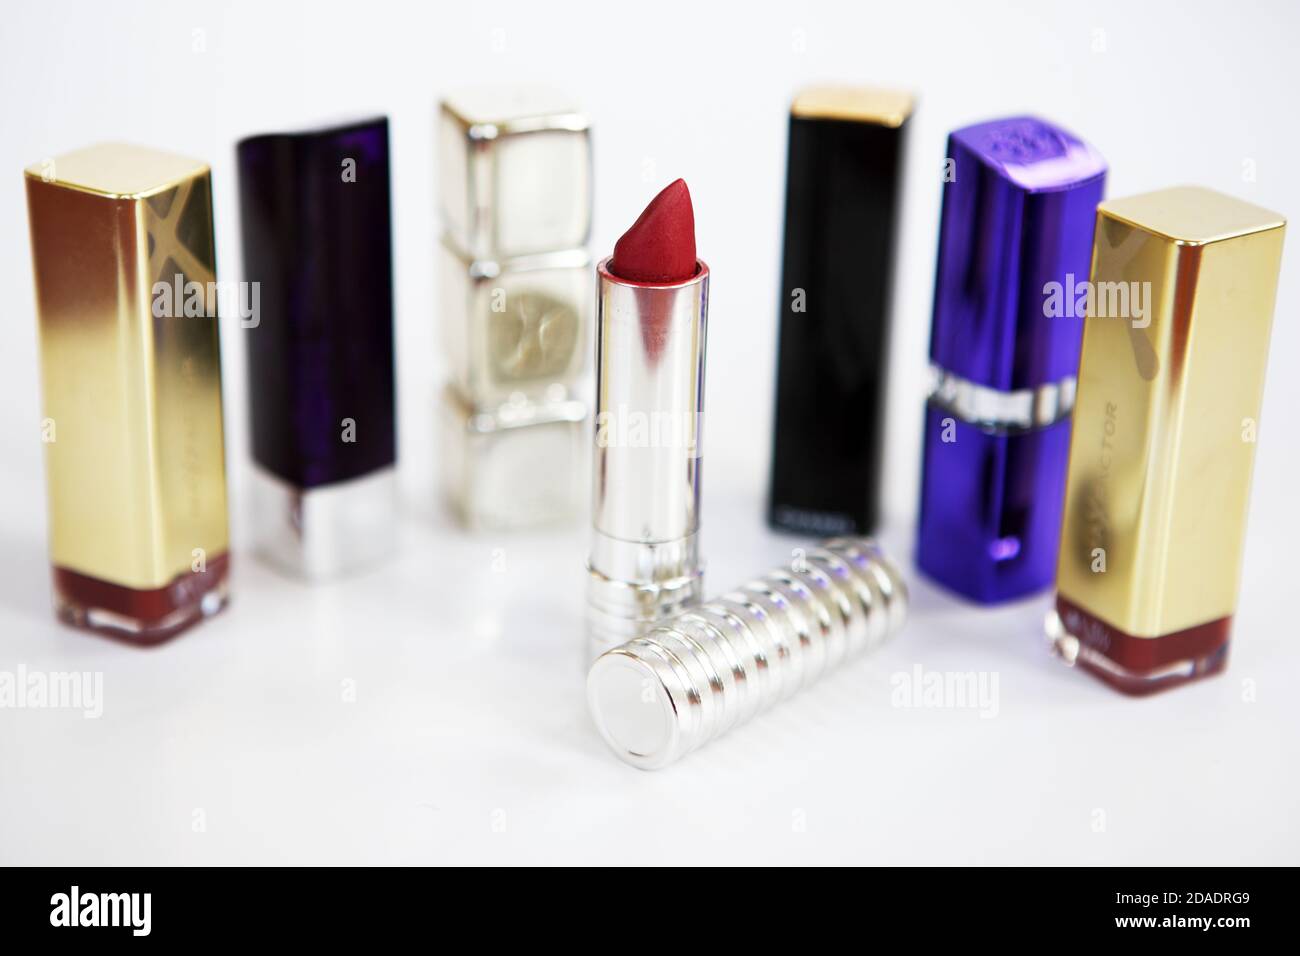 Various lipsticks on a white background Stock Photo